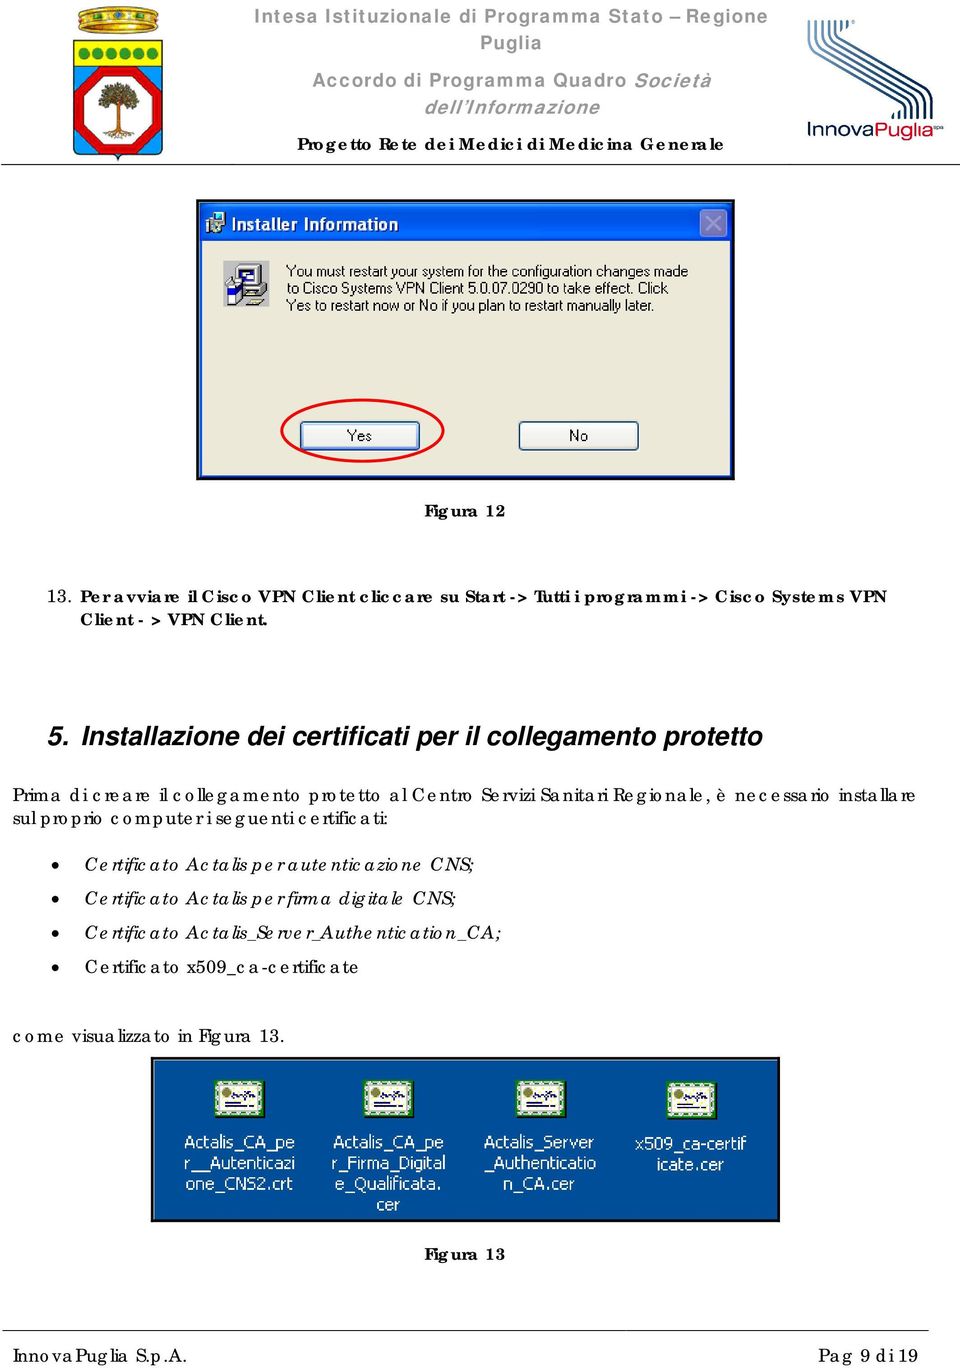 necessario installare sul proprio computer i seguenti certificati: Certificato Actalis per autenticazione CNS; Certificato Actalis per firma